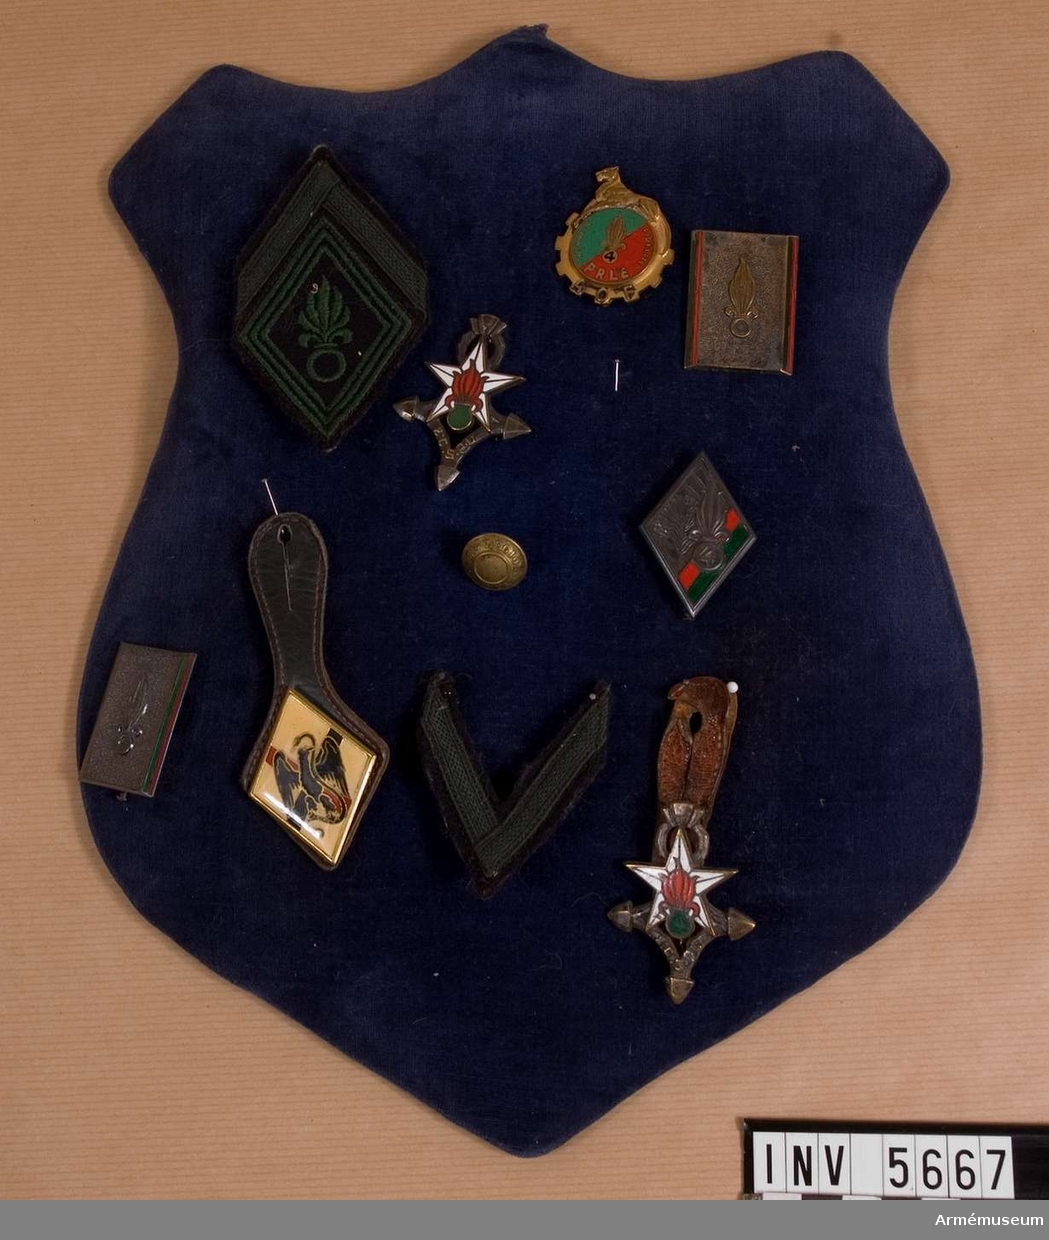 Märkessköld med regementsemblem från Franska främlingslegionen. Tio tecken placerade på en med mörkblå sammet överklädd sköld.